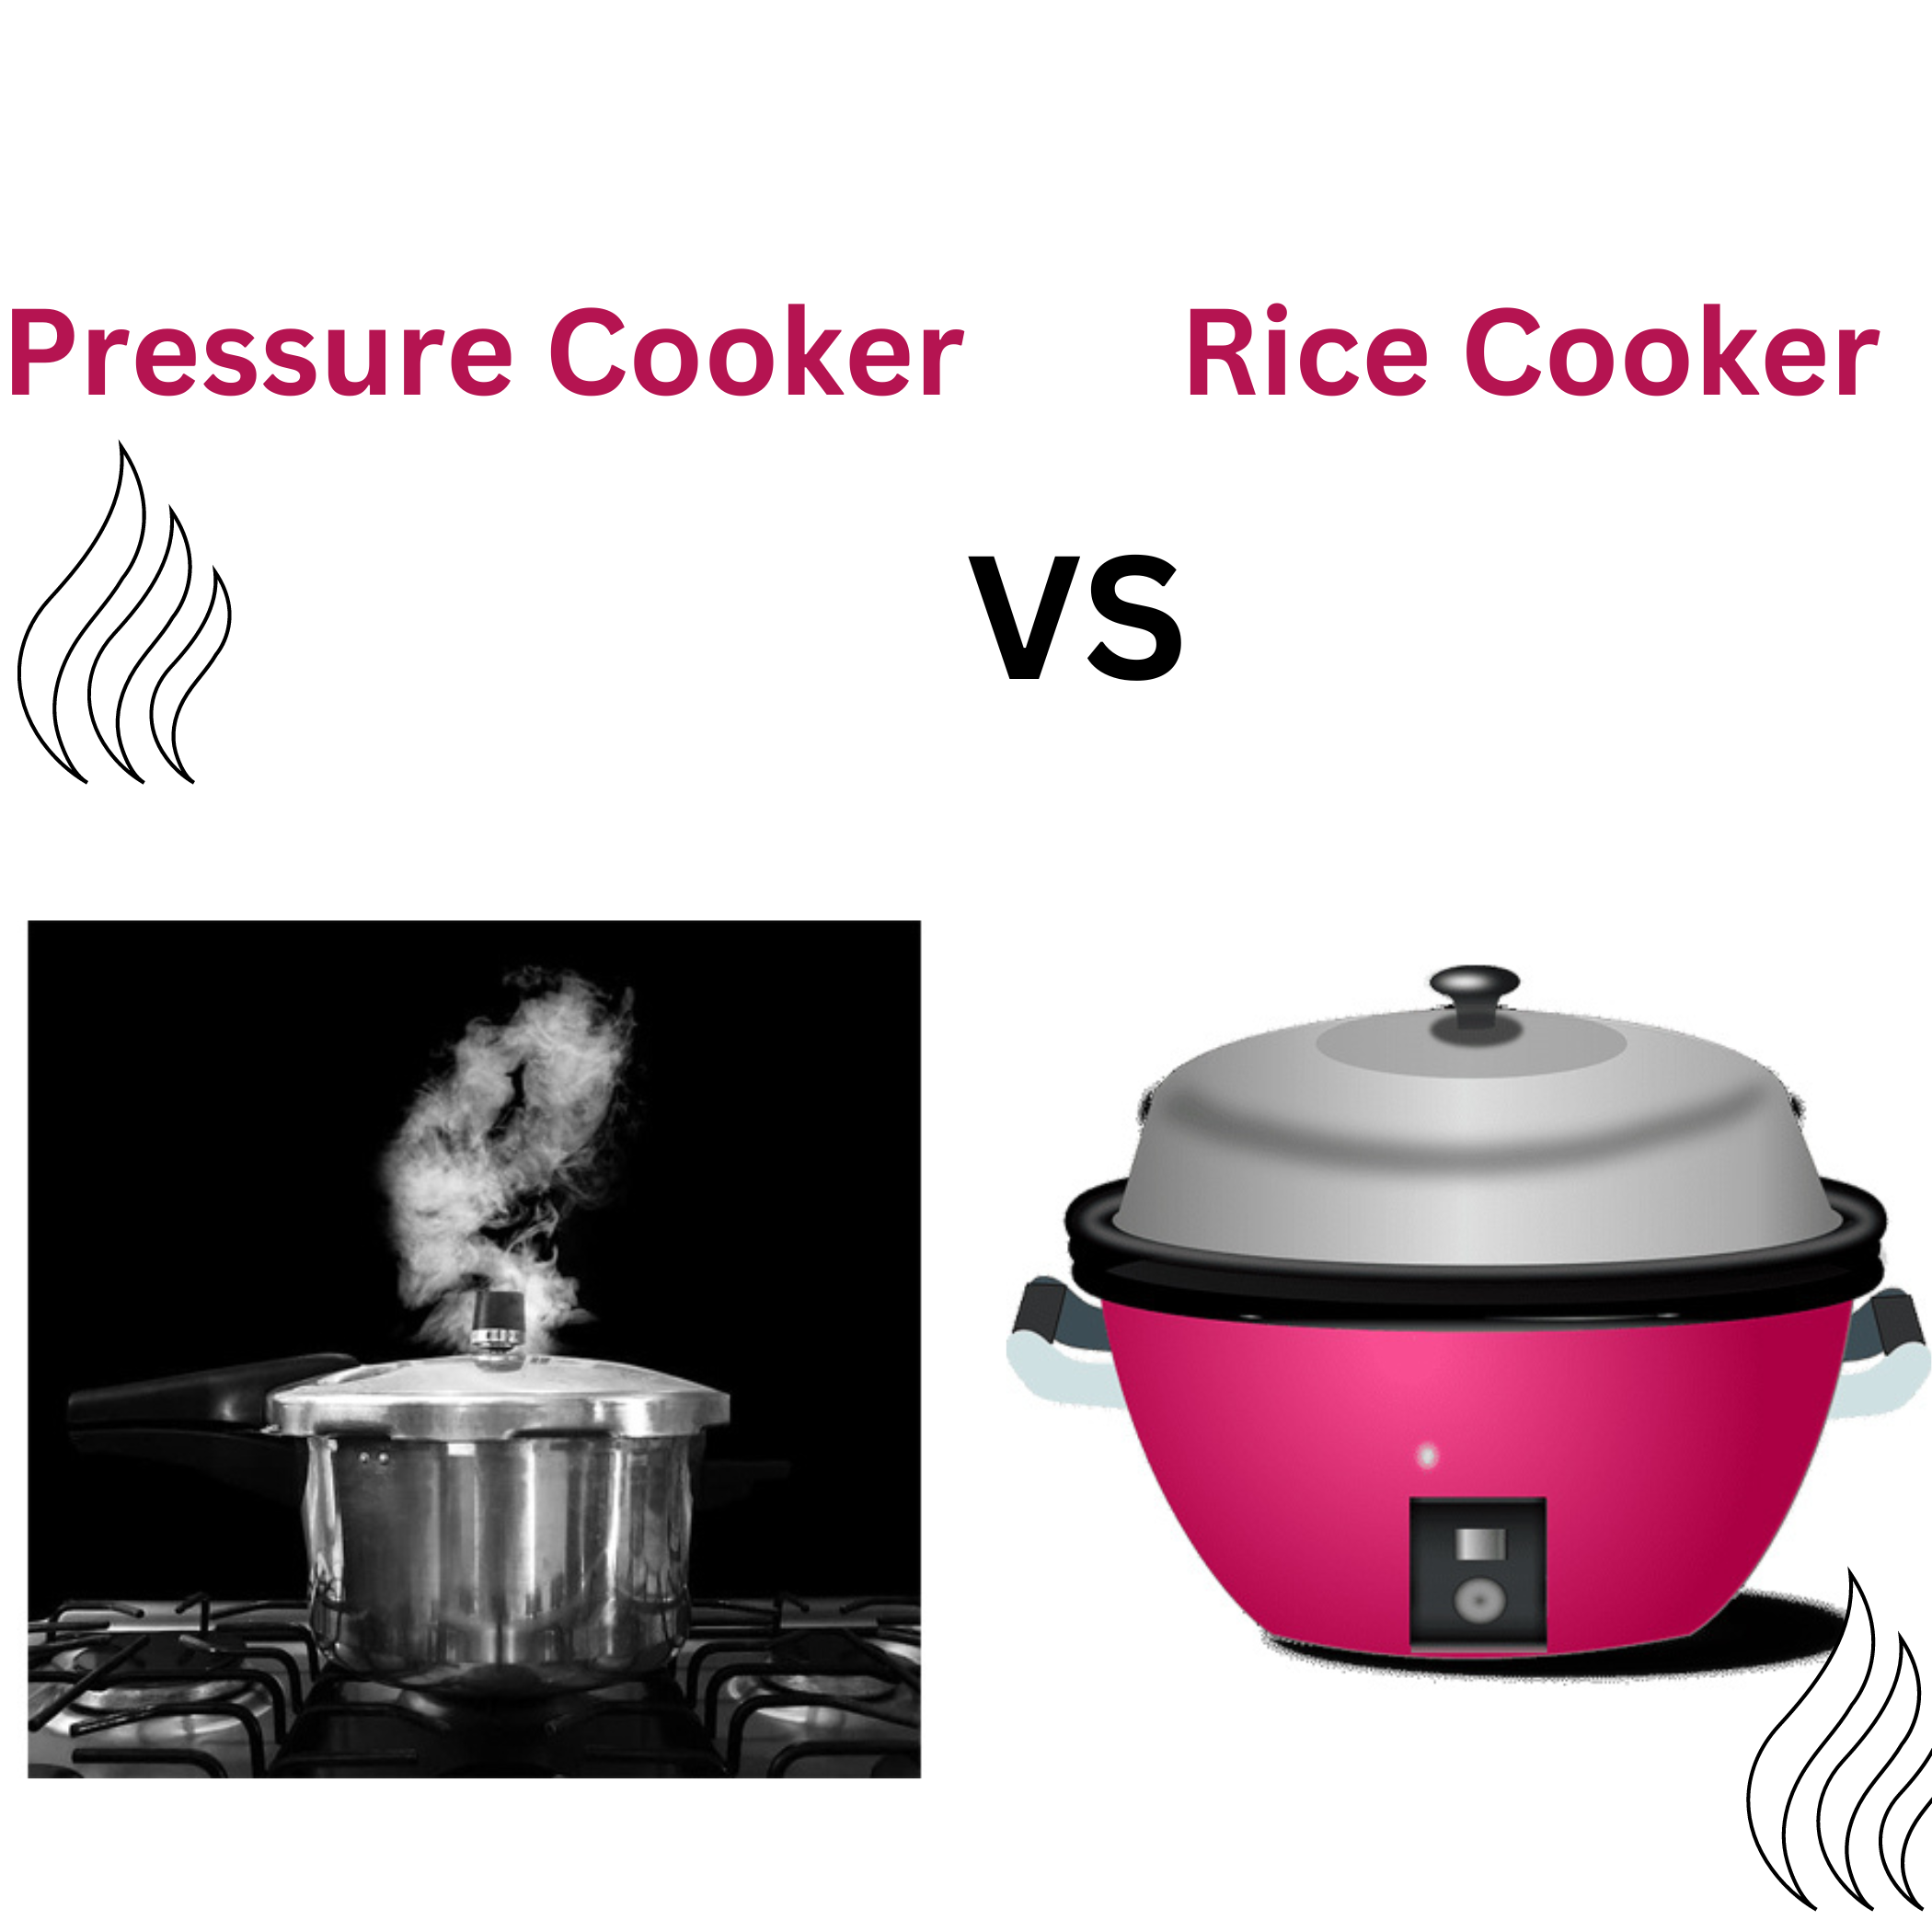 Deep Study- Pressure cooker versus Rice cooker